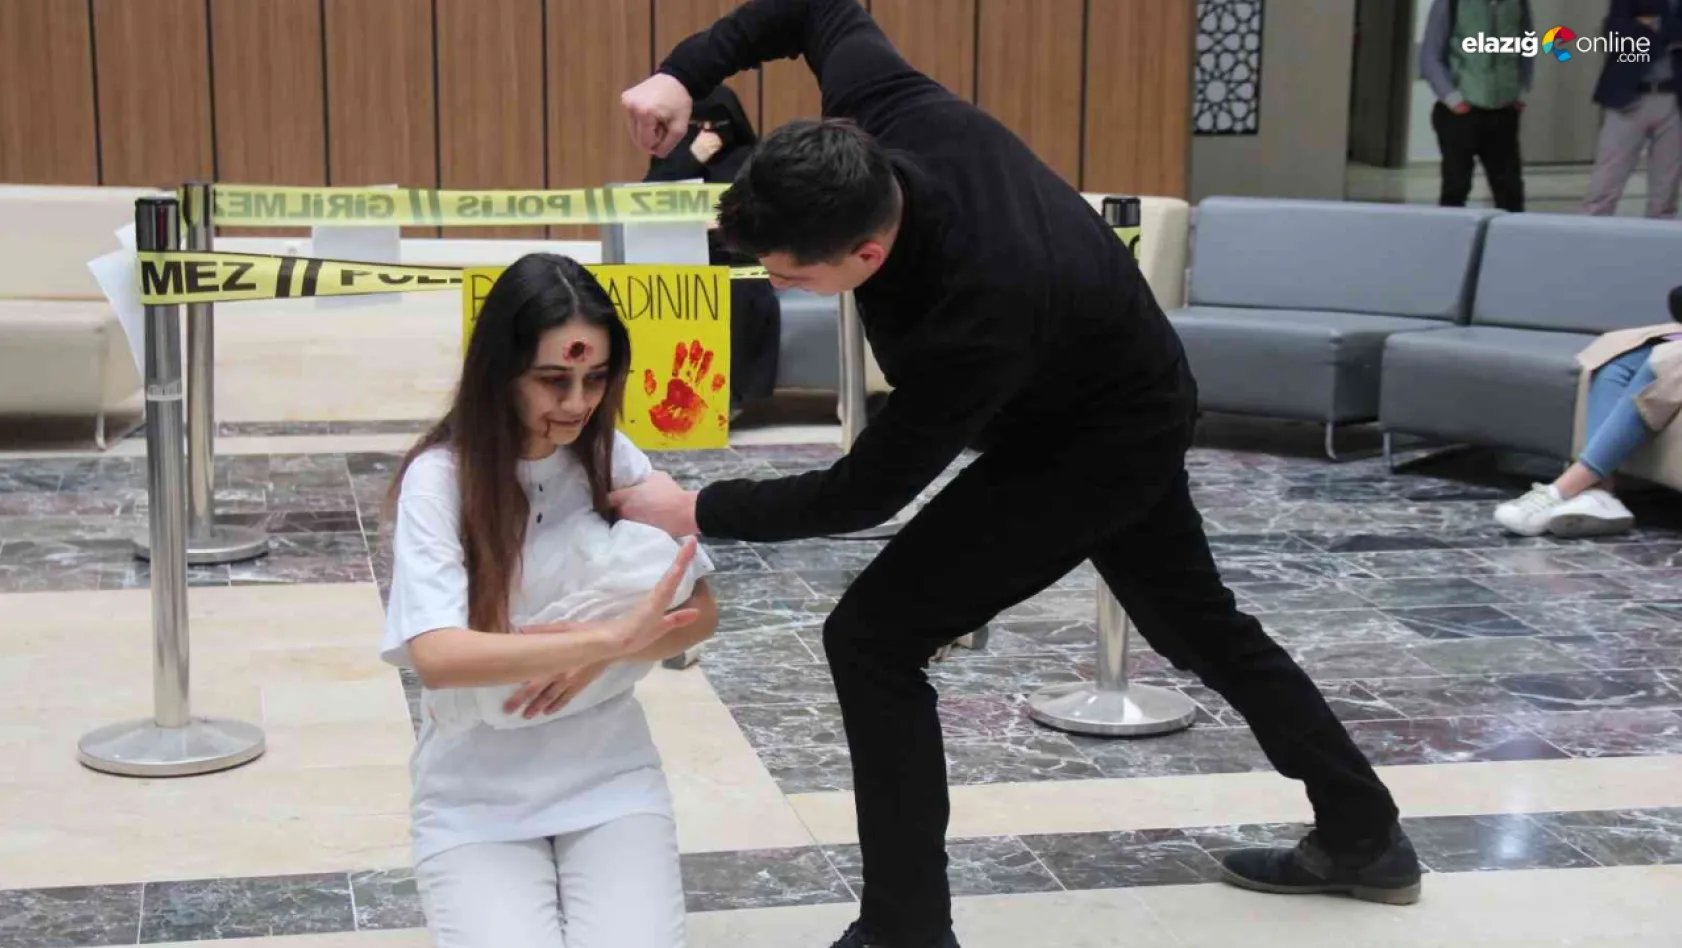 Elazığ'da kadına yönelik şiddetle mücadele etkinliği düzenlendi